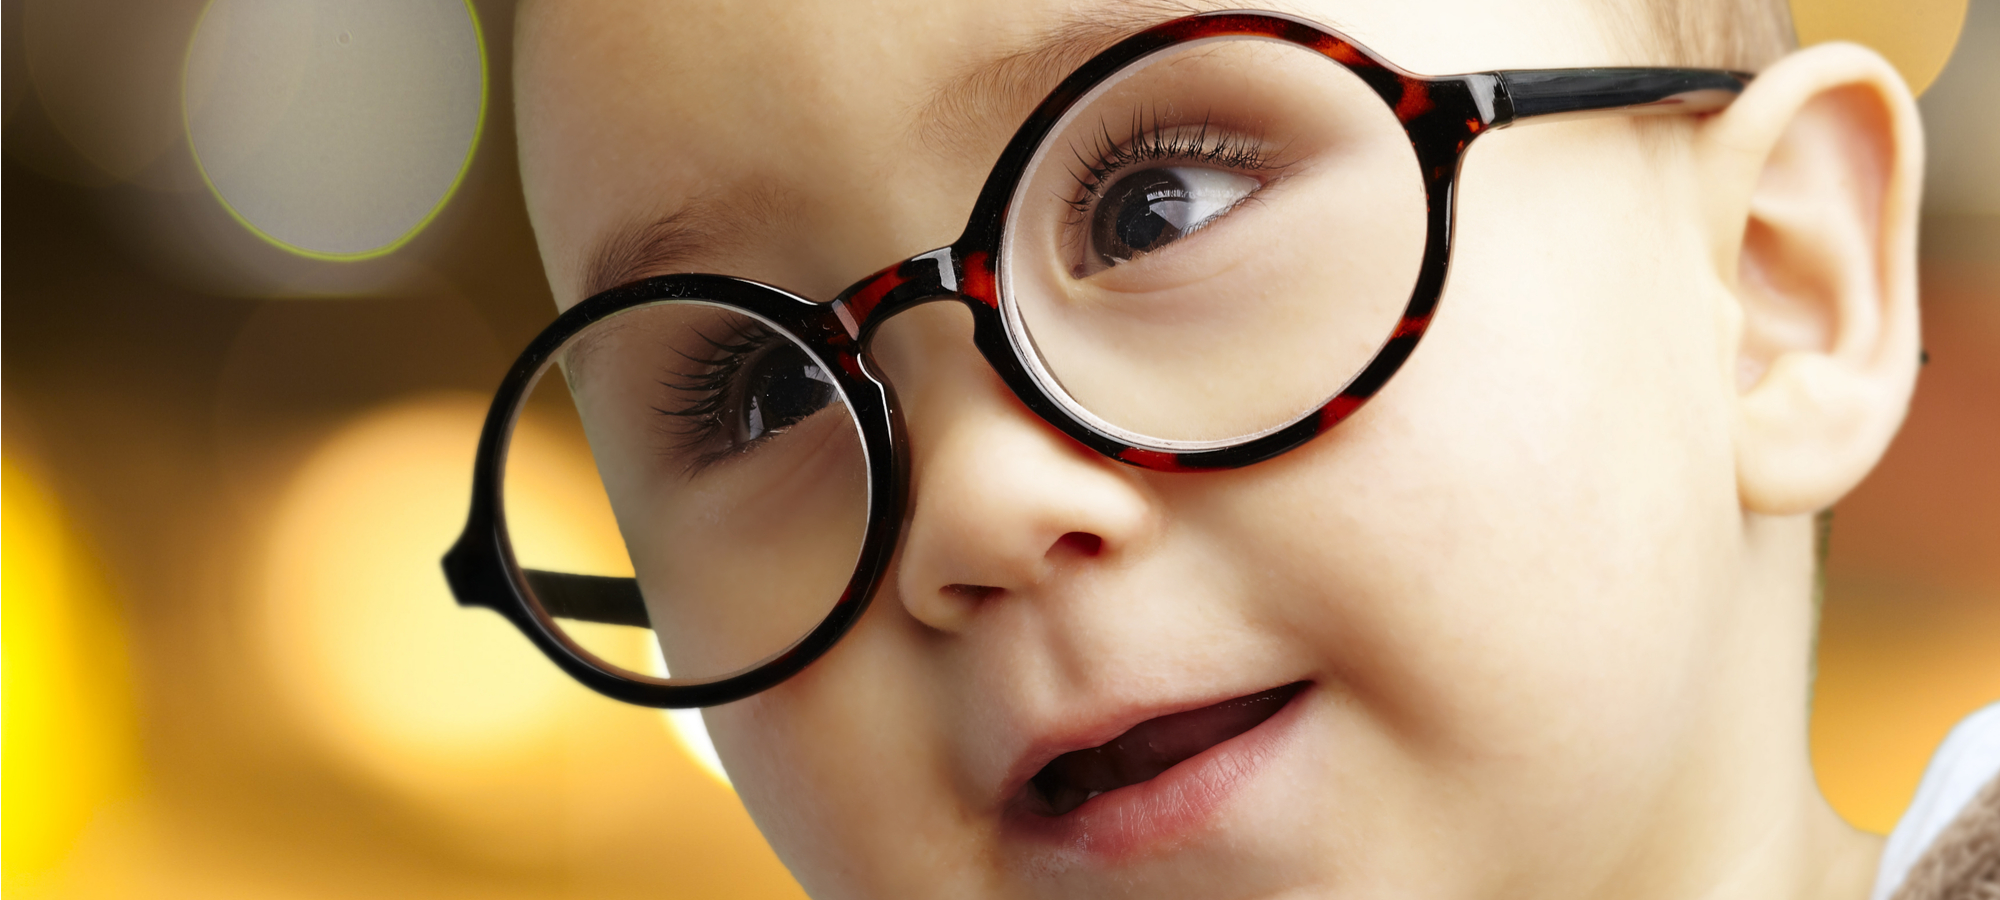 Child in glasses